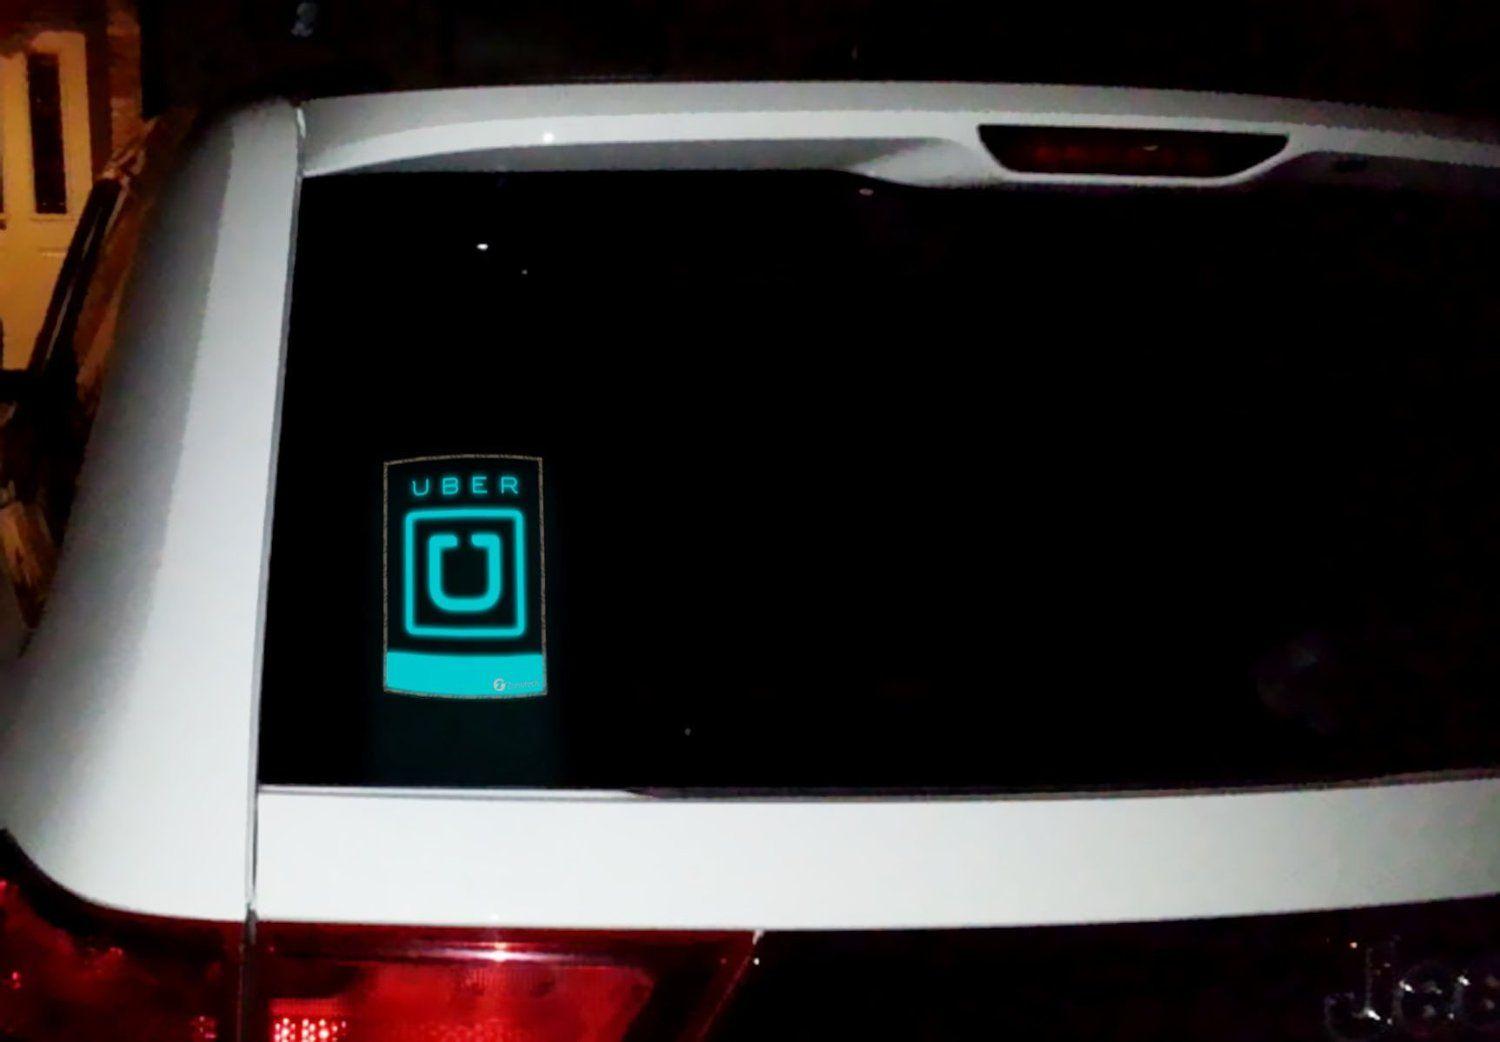 Illuminating Uber Logo - Zone Tech Blue UBER Sign